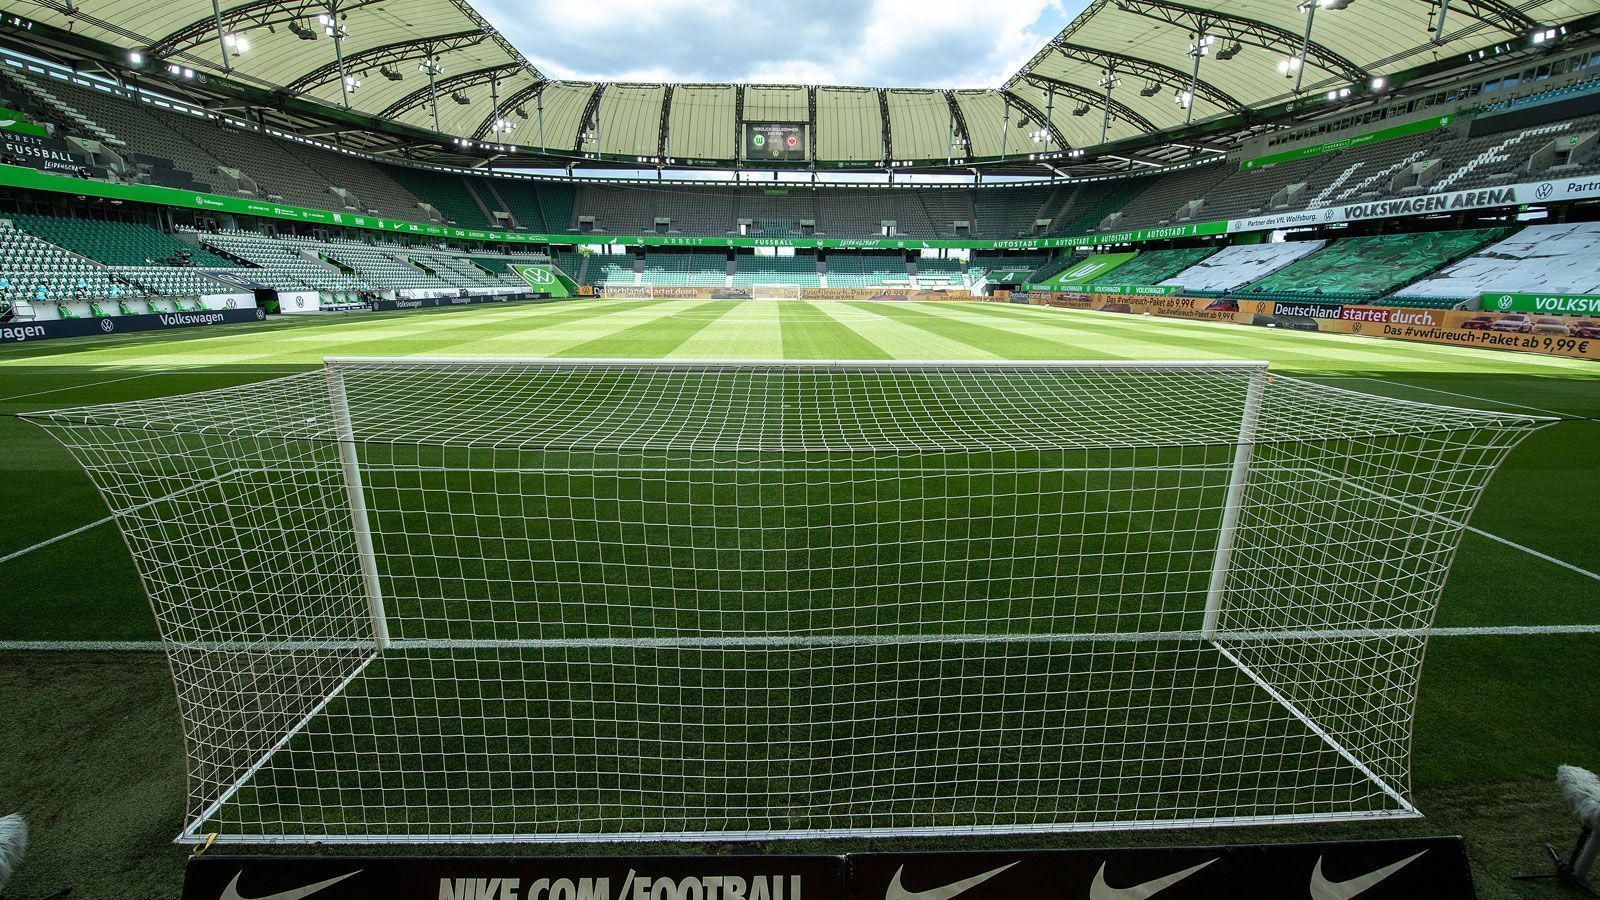 
                <strong>VfL Wolfsburg</strong><br>
                Stadion: Volkswagen-ArenaKapazität: 30.000Vorgehen: Dauerkartenverkauf ist bereits abgeschlossen, Abbuchungen werden erst durchgeführt, sobald feststeht, dass wieder vollständig vor Zuschauern gespielt werden kann
              